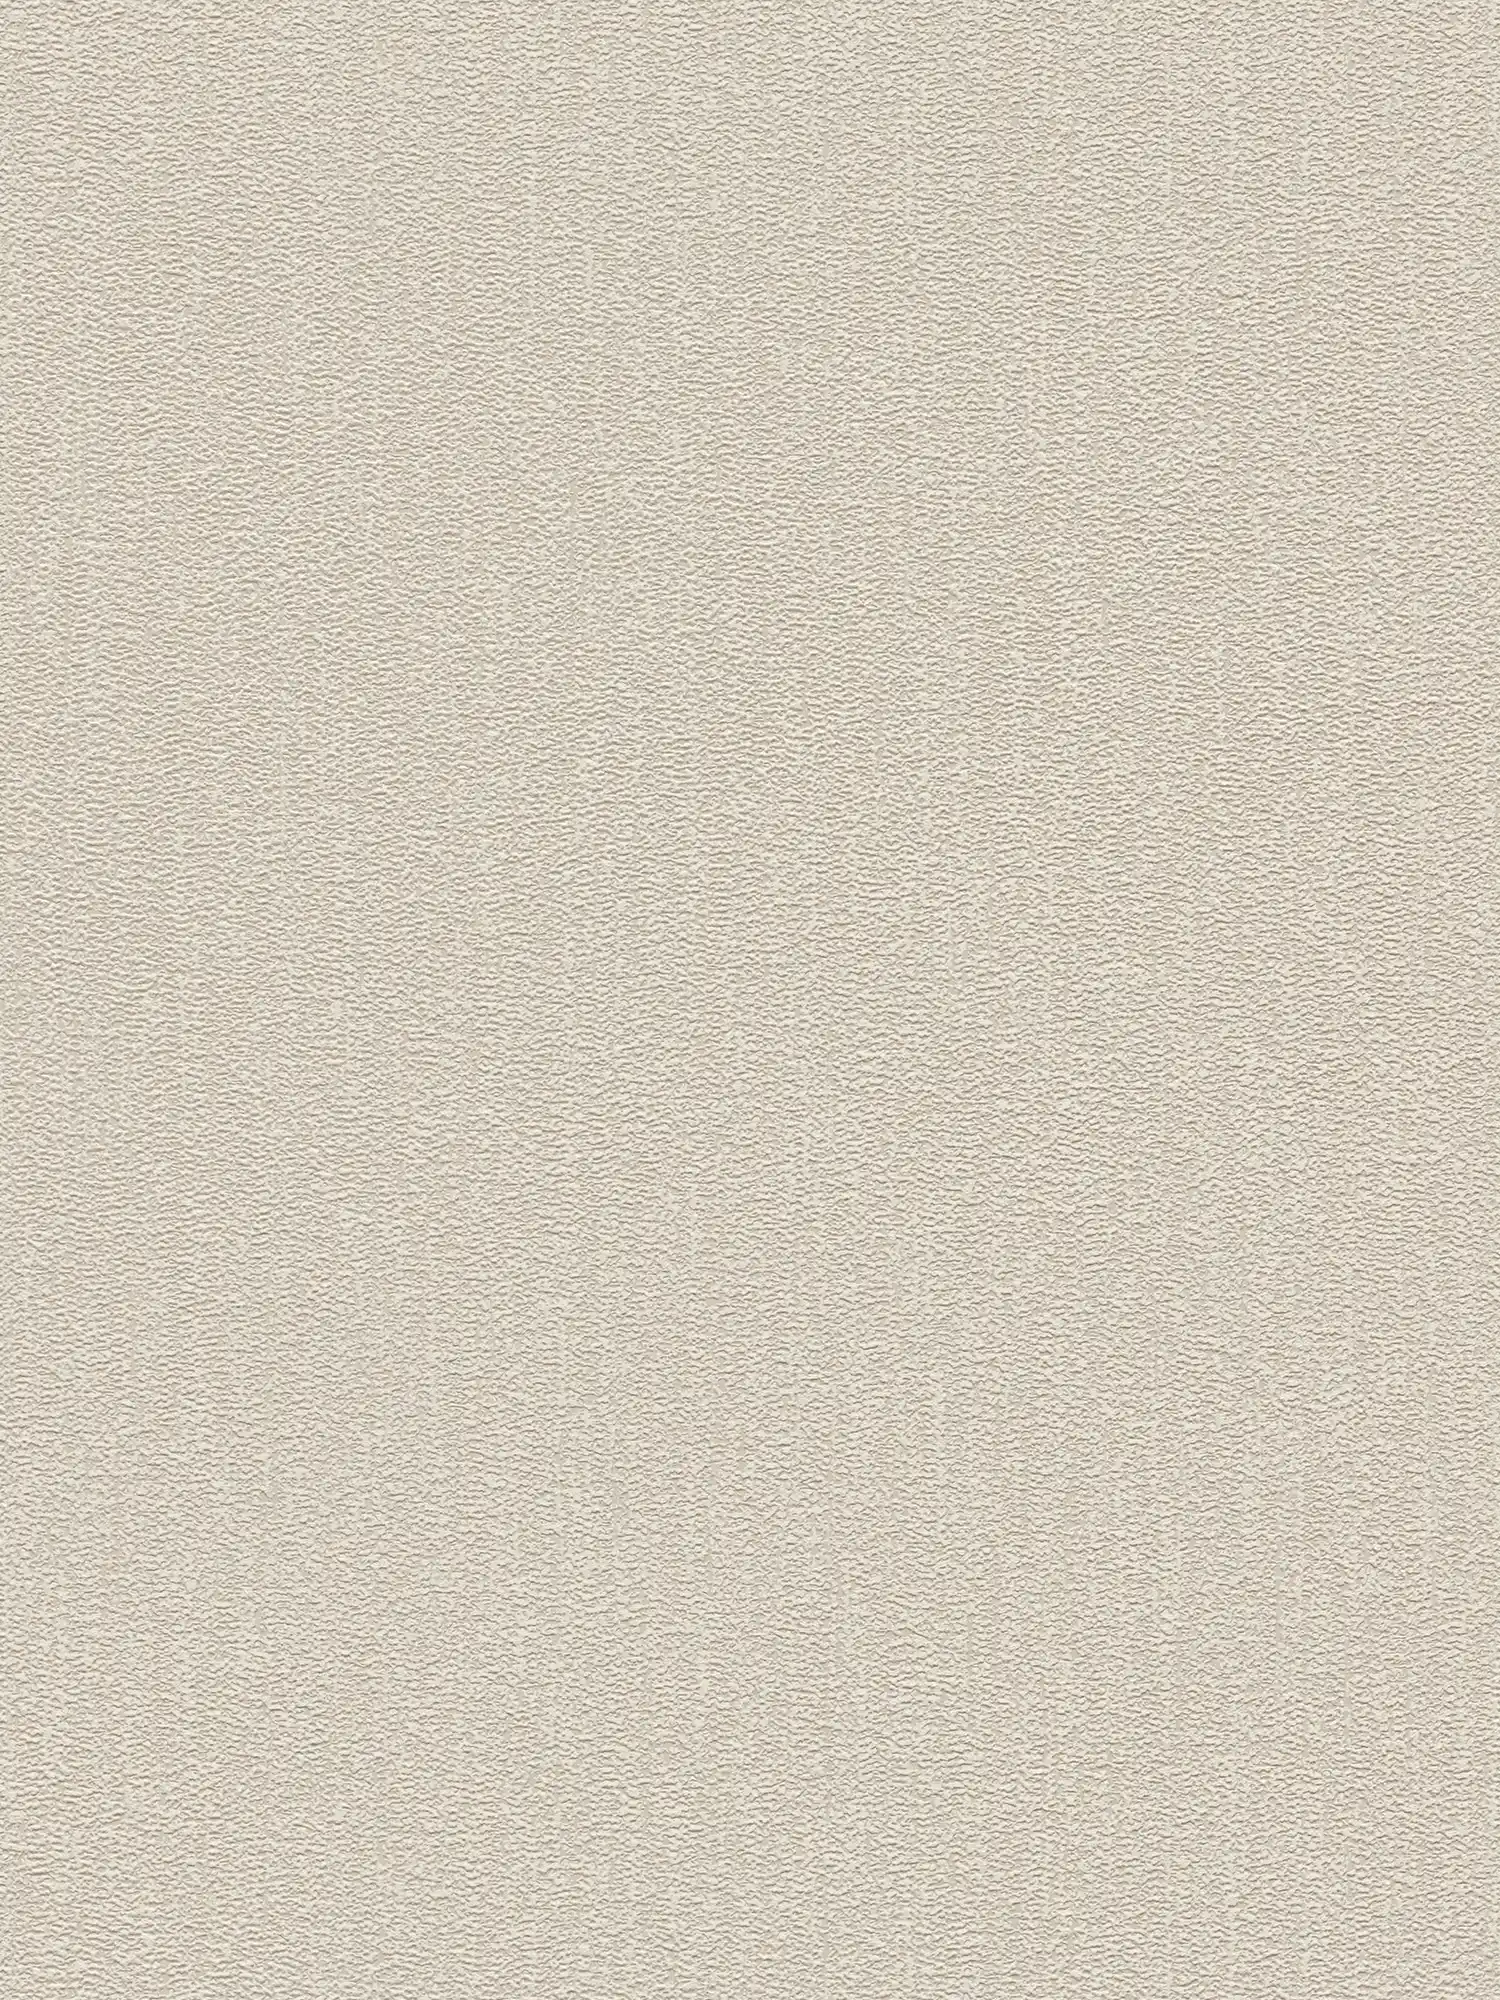 Uni Tapete mit Struktur mit leichtem Glanz – Beige, Grau, Silber
